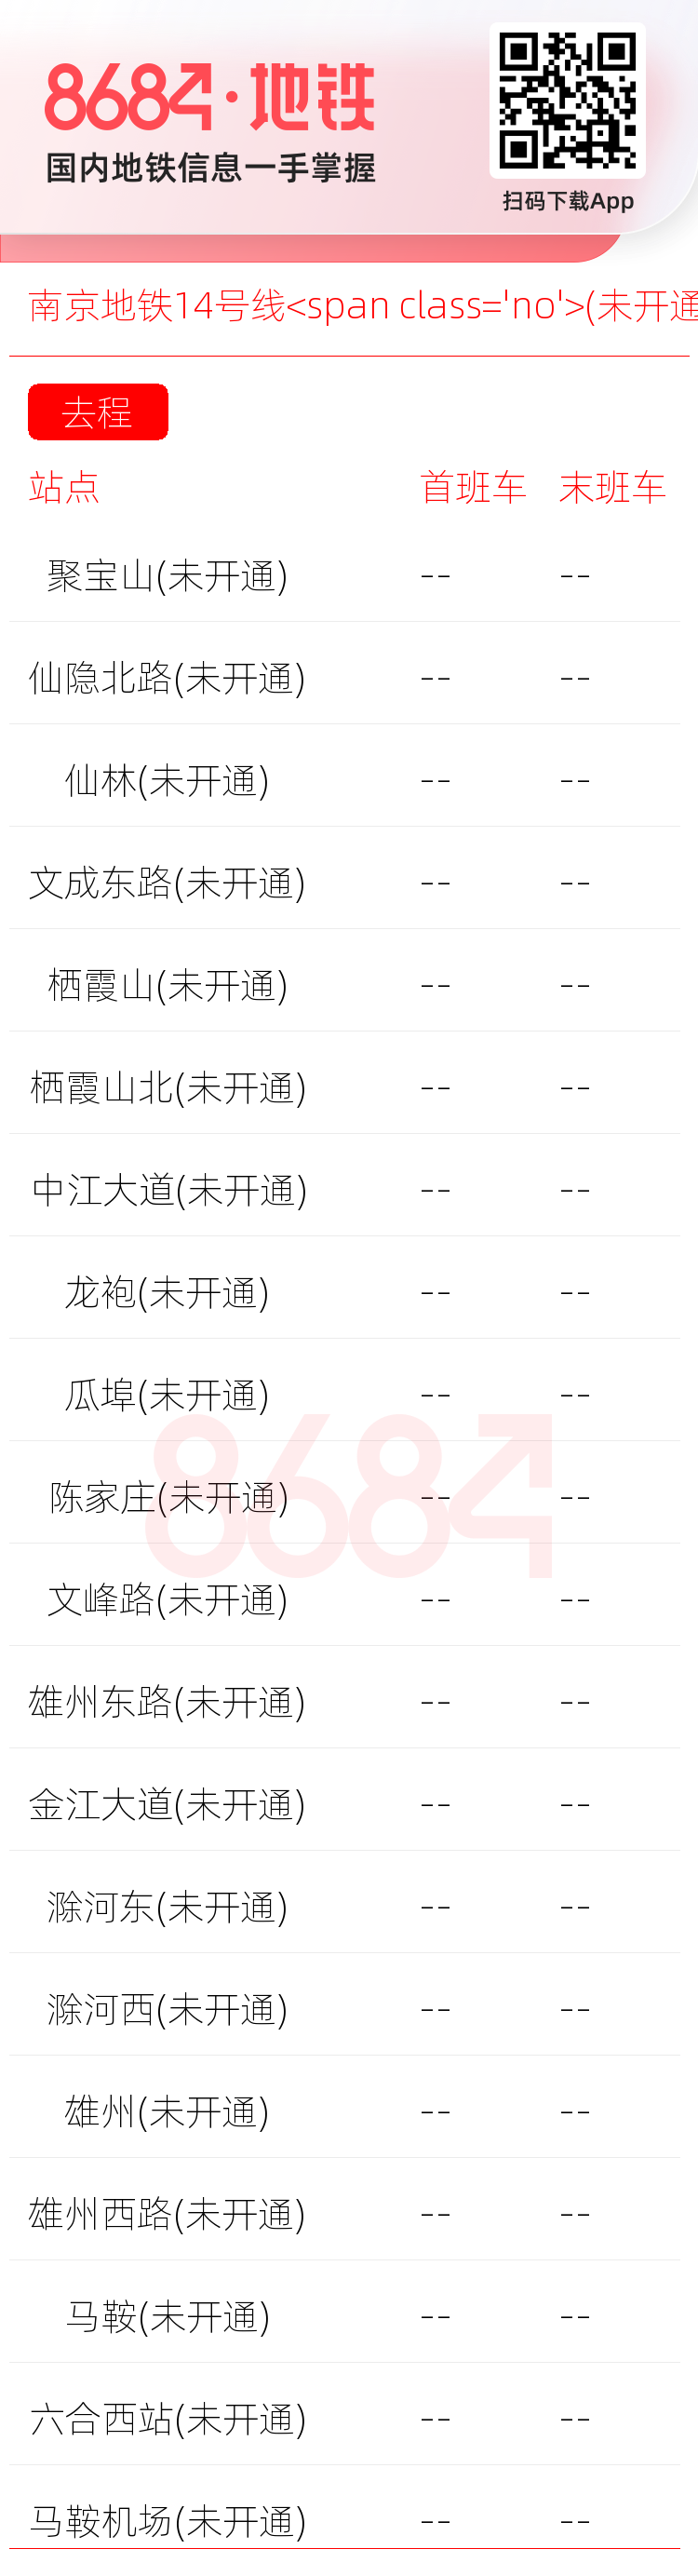 南京地铁14号线<span class='no'>(未开通)</span>运营时间表